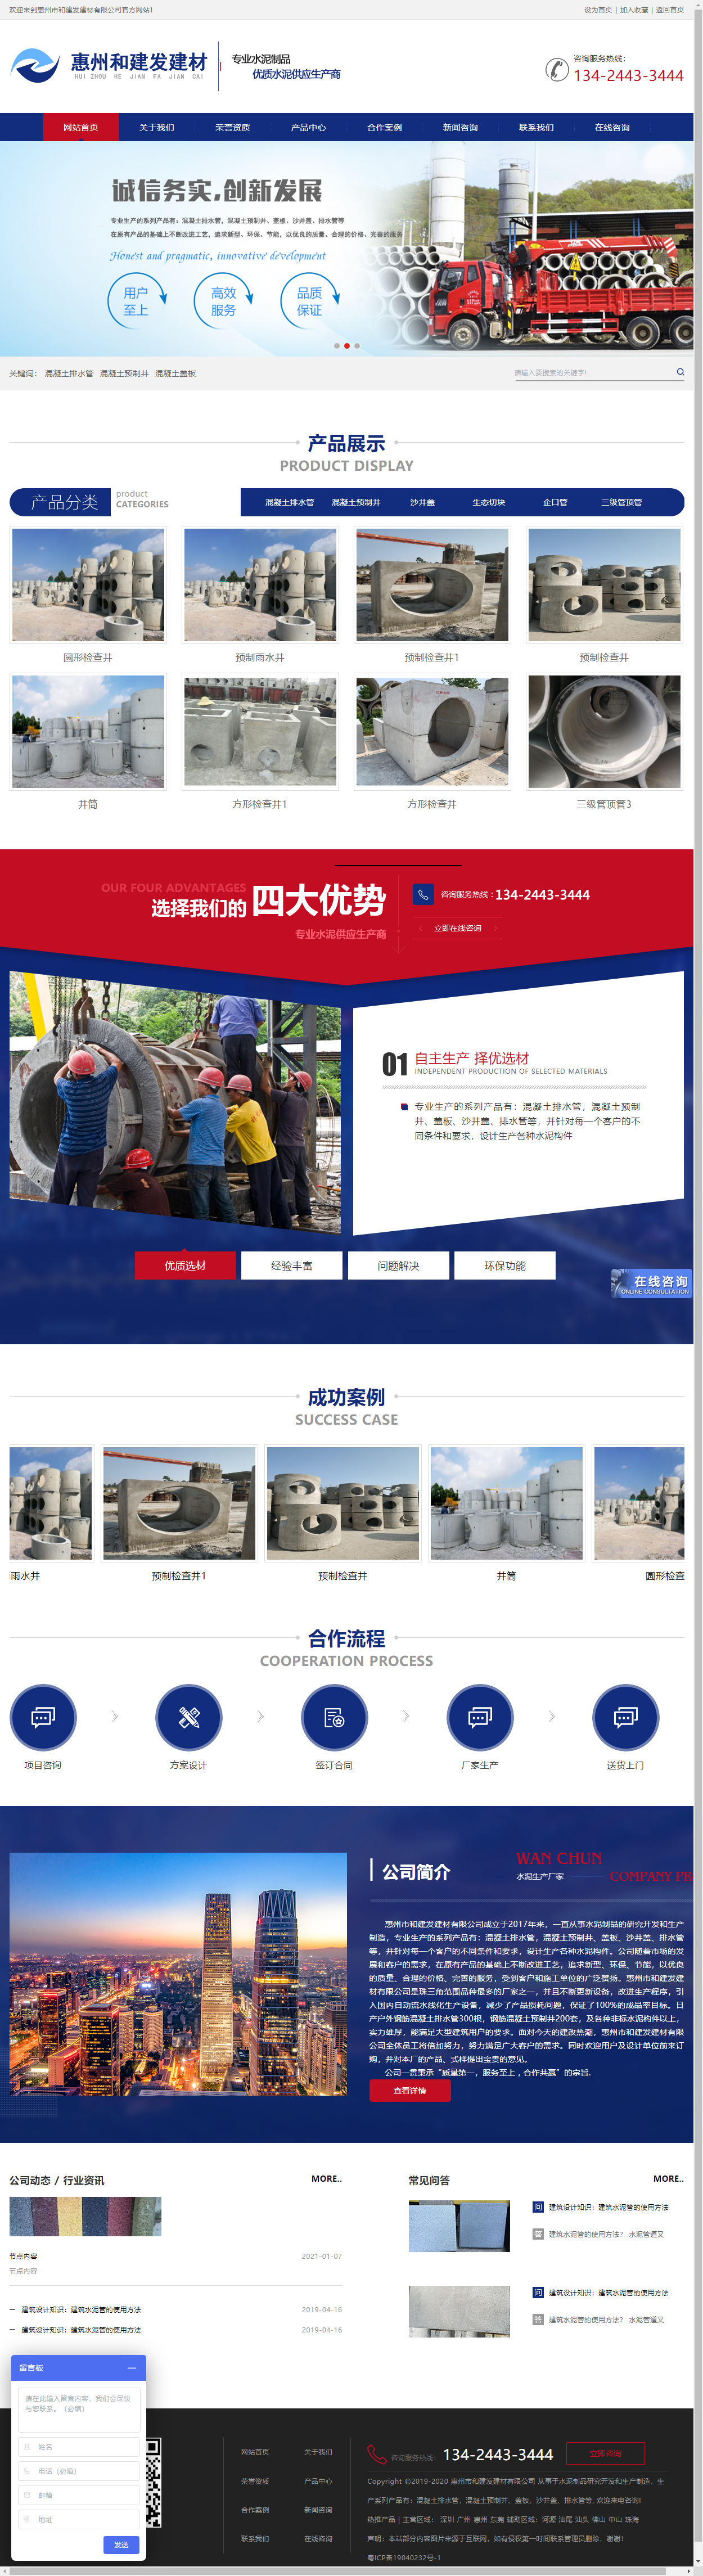 惠州市和建发建材有限公司网站案例